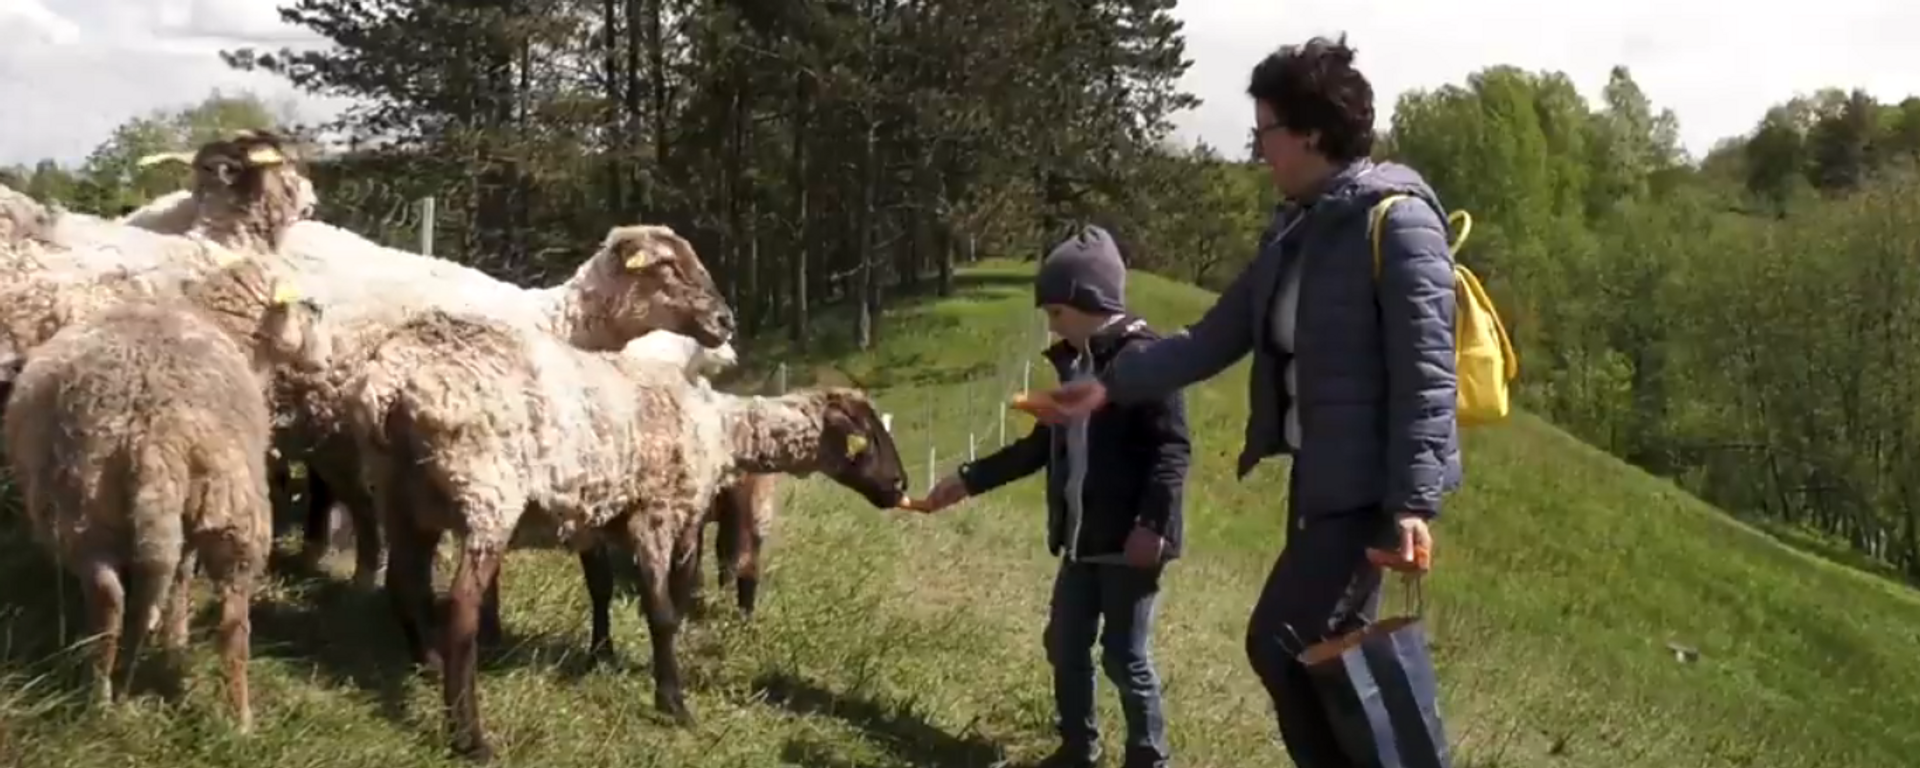 Мэрия Вильнюса показала на видео овец и коз в ландшафтном заповеднике - Sputnik Lietuva, 1920, 22.05.2021